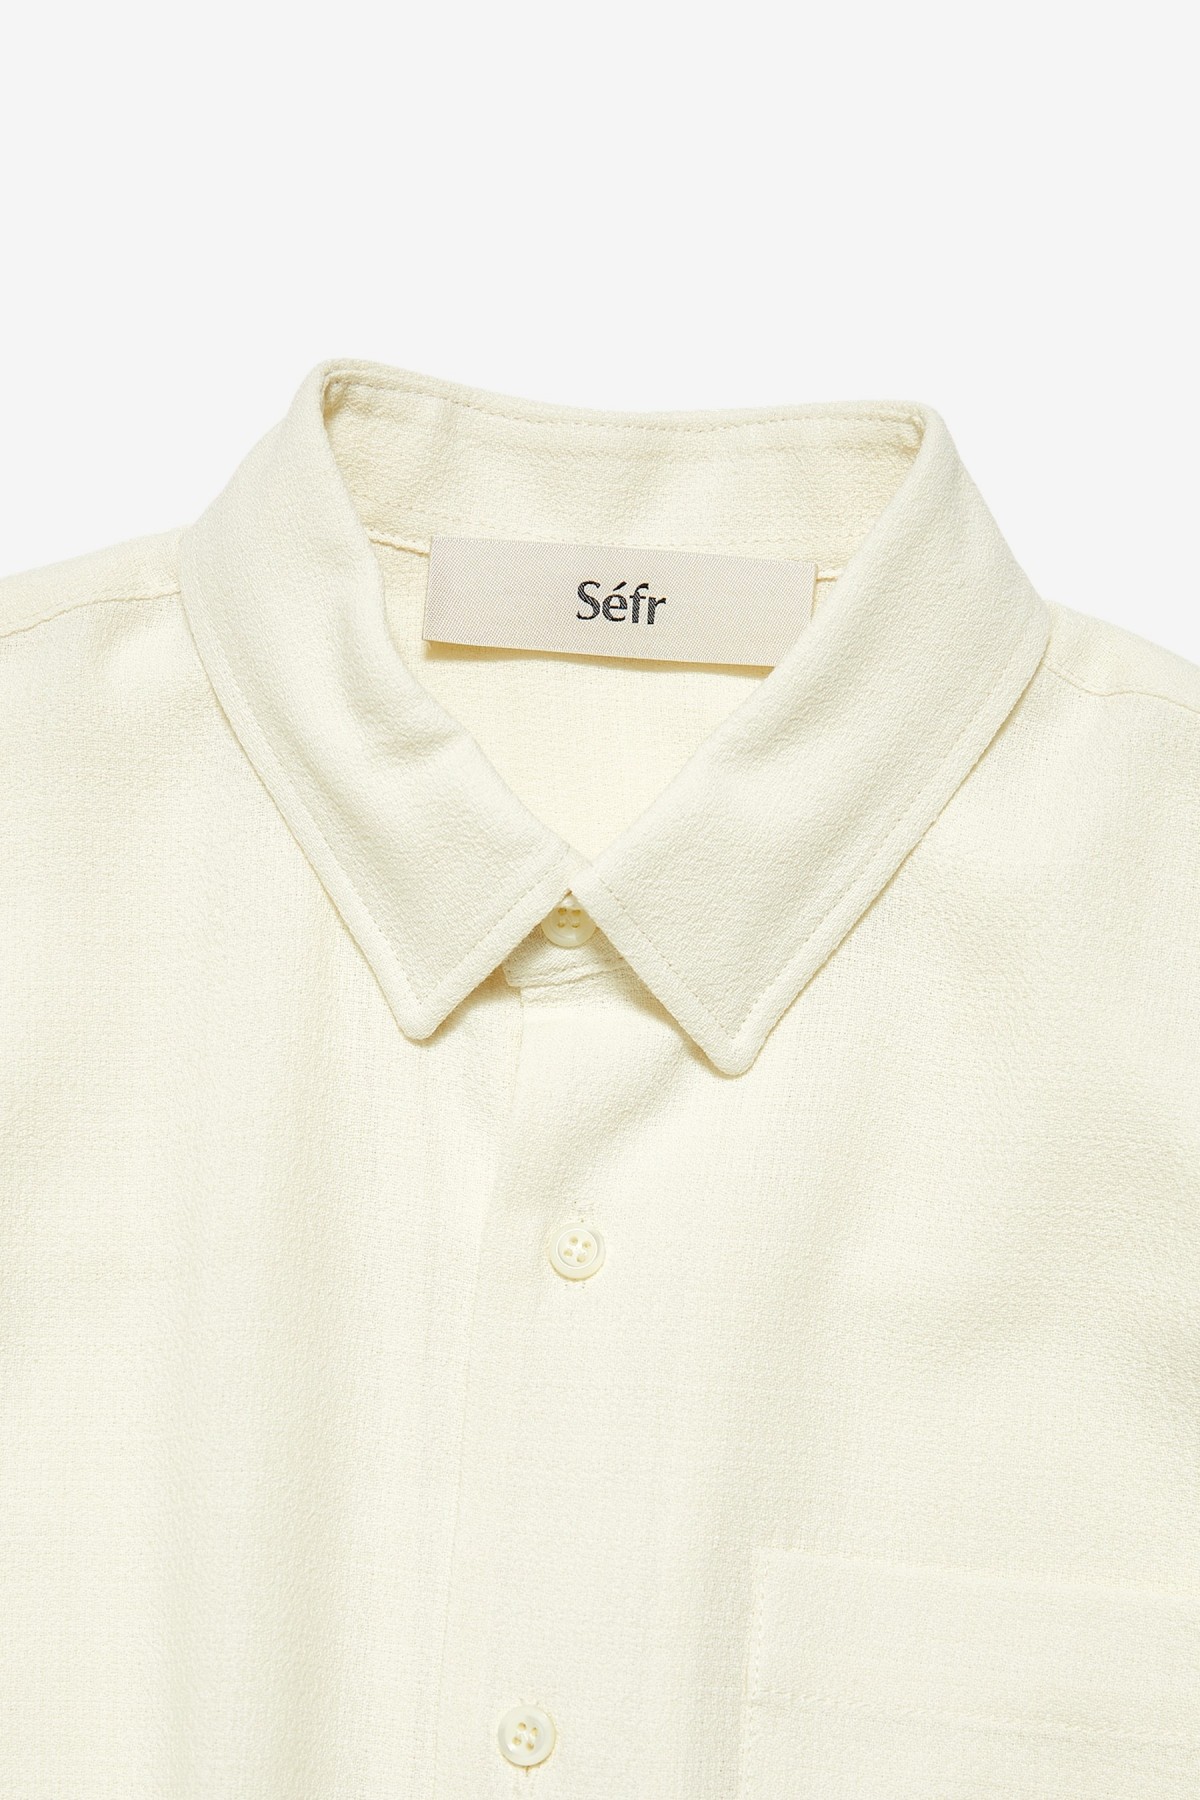 Séfr Hampus Shirt  in Off White